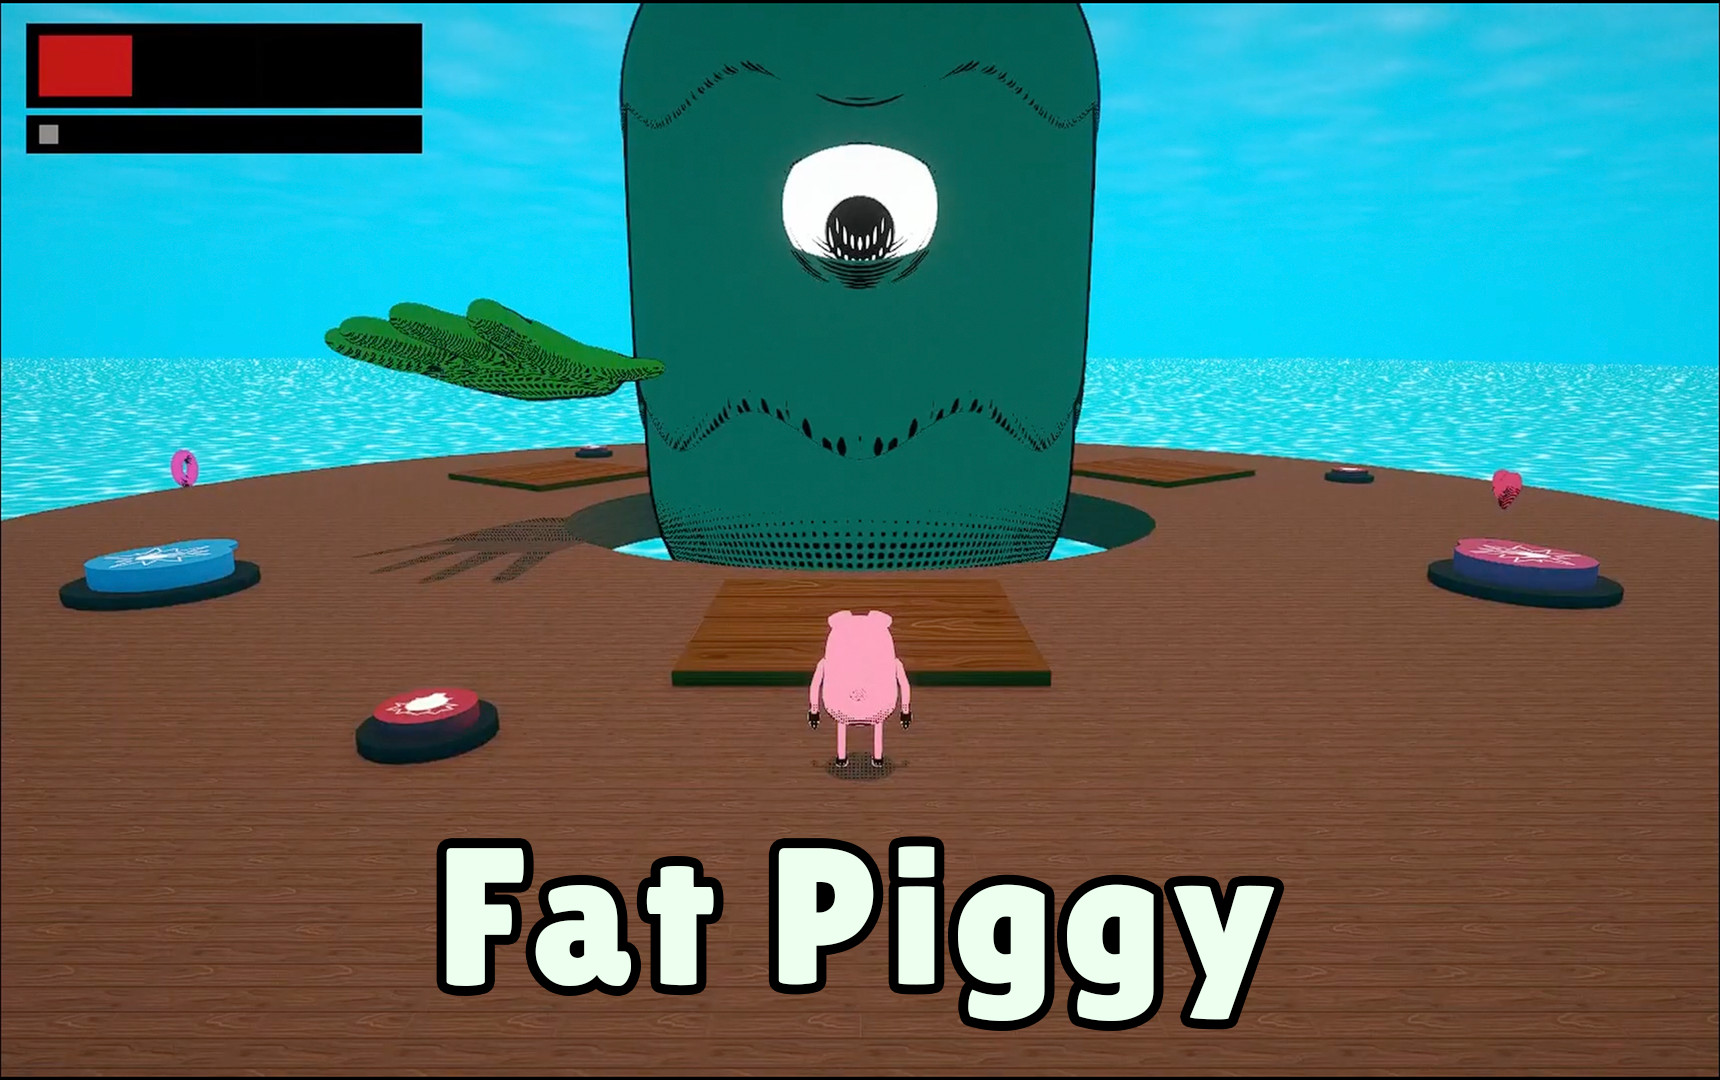 Fat Piggy